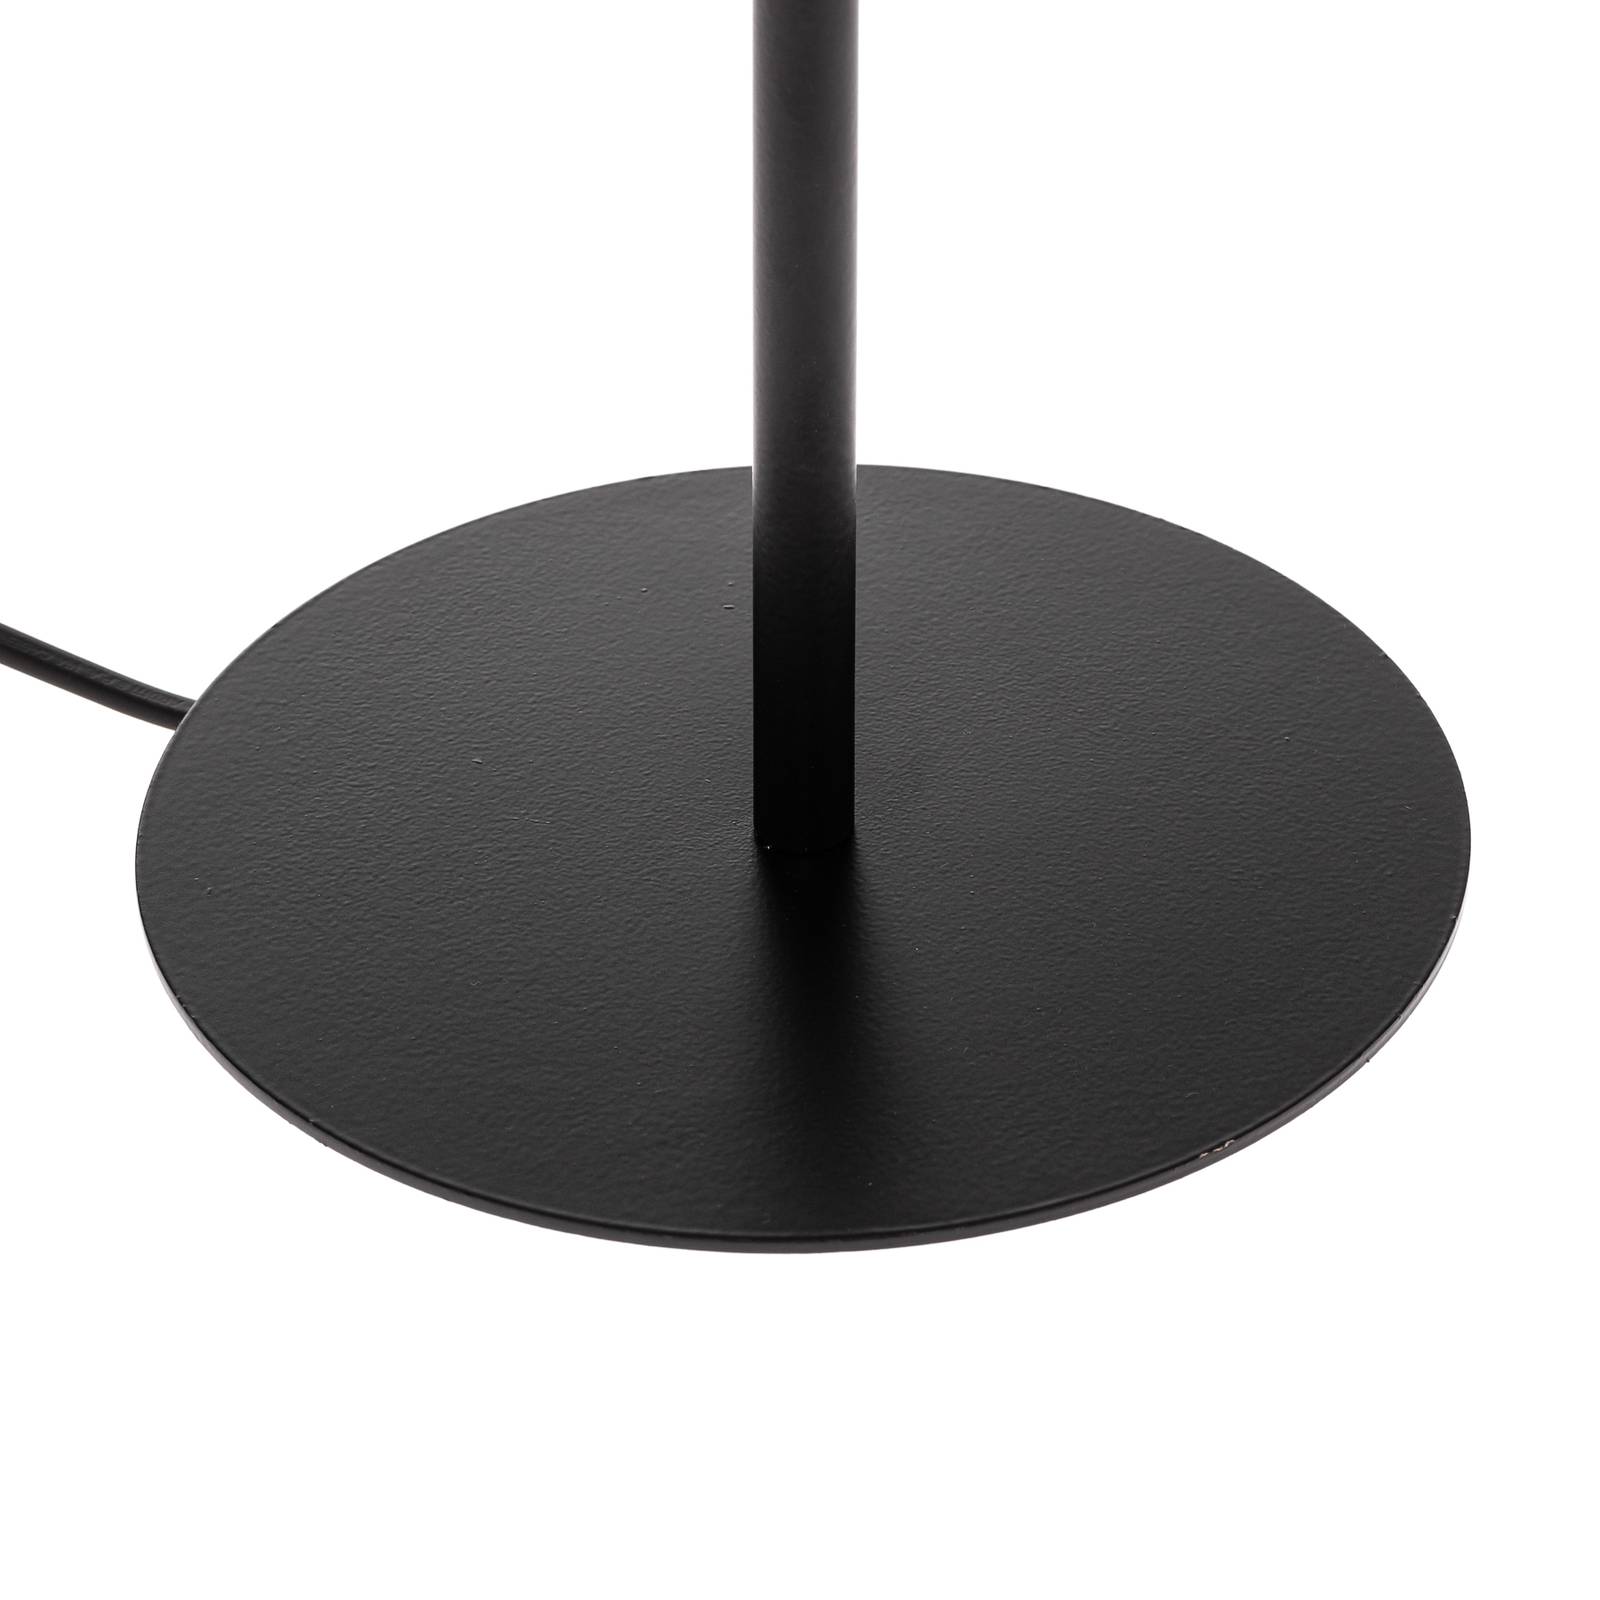 Arden bordlampe uten skjerm svart høyde 44 cm